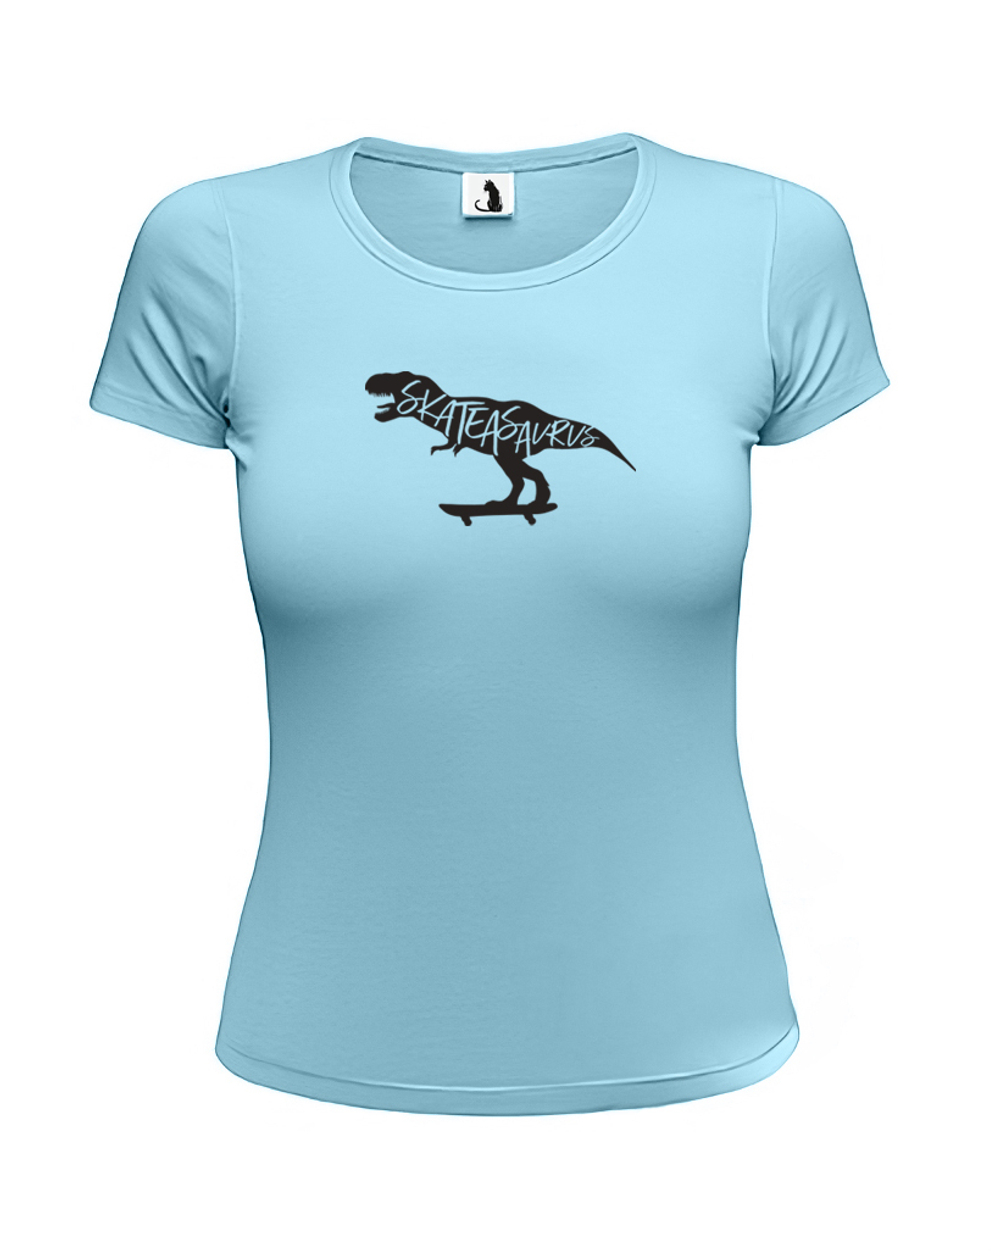 Футболка Skateasaurus женская приталенная голубая с черным рисунком